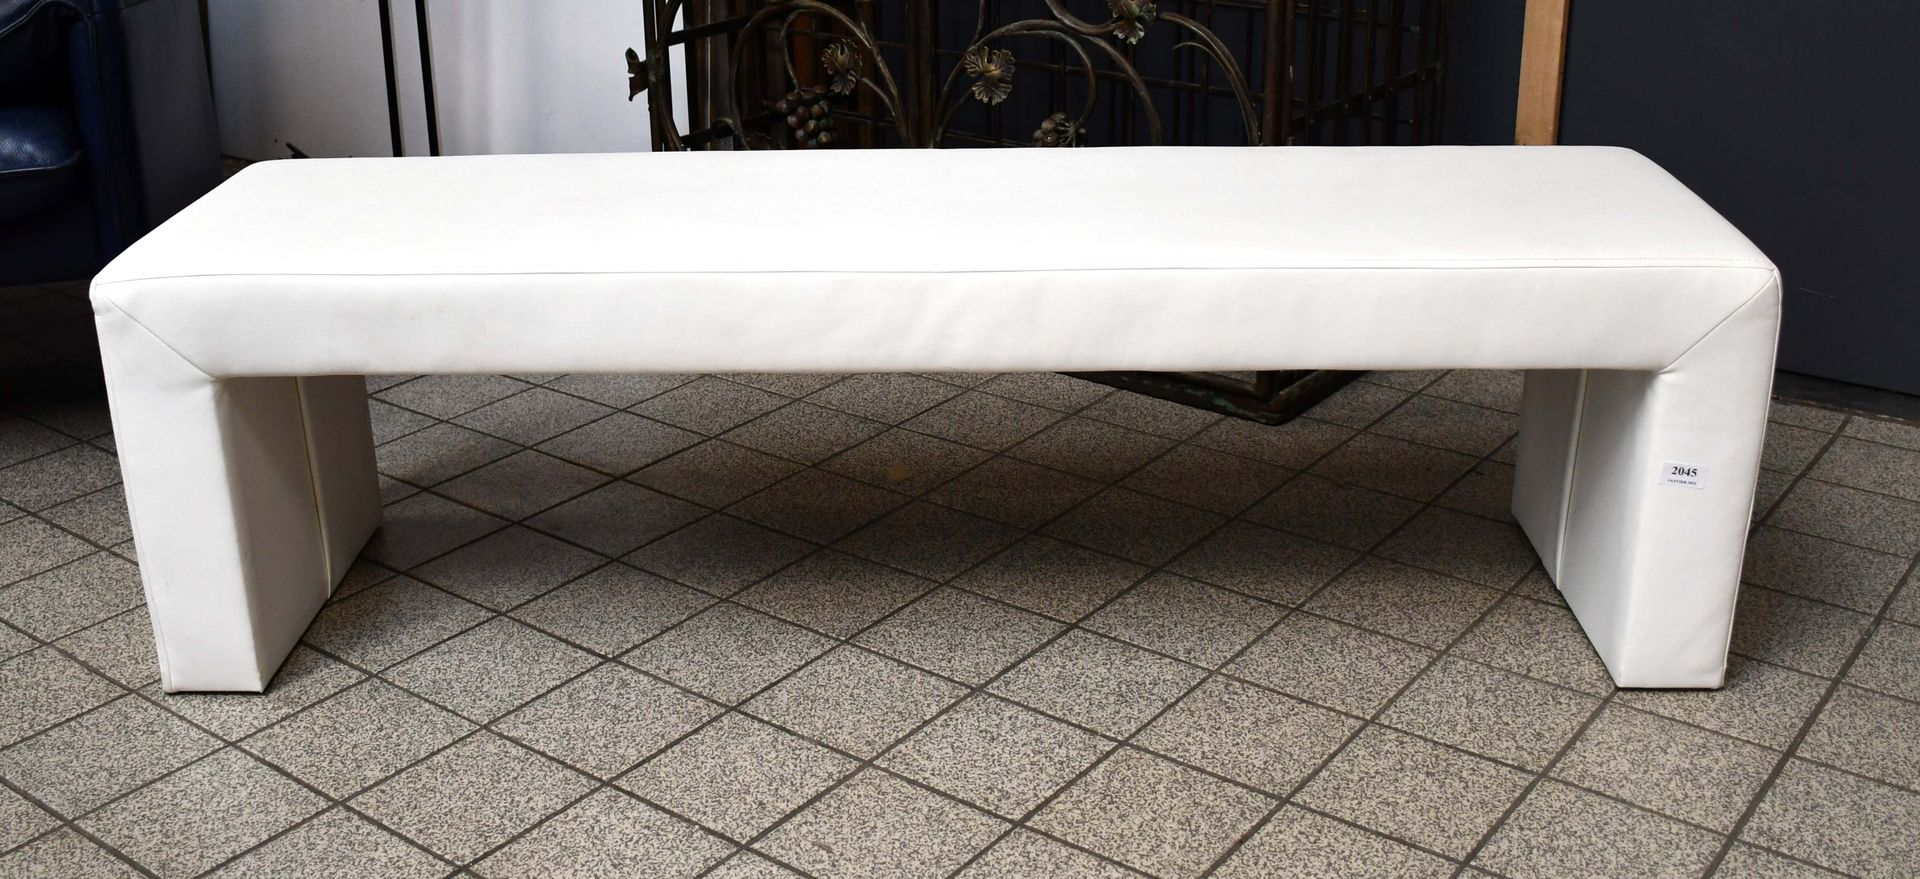 Null Sitzbank aus weißem Skai.

Länge: 140 cm.